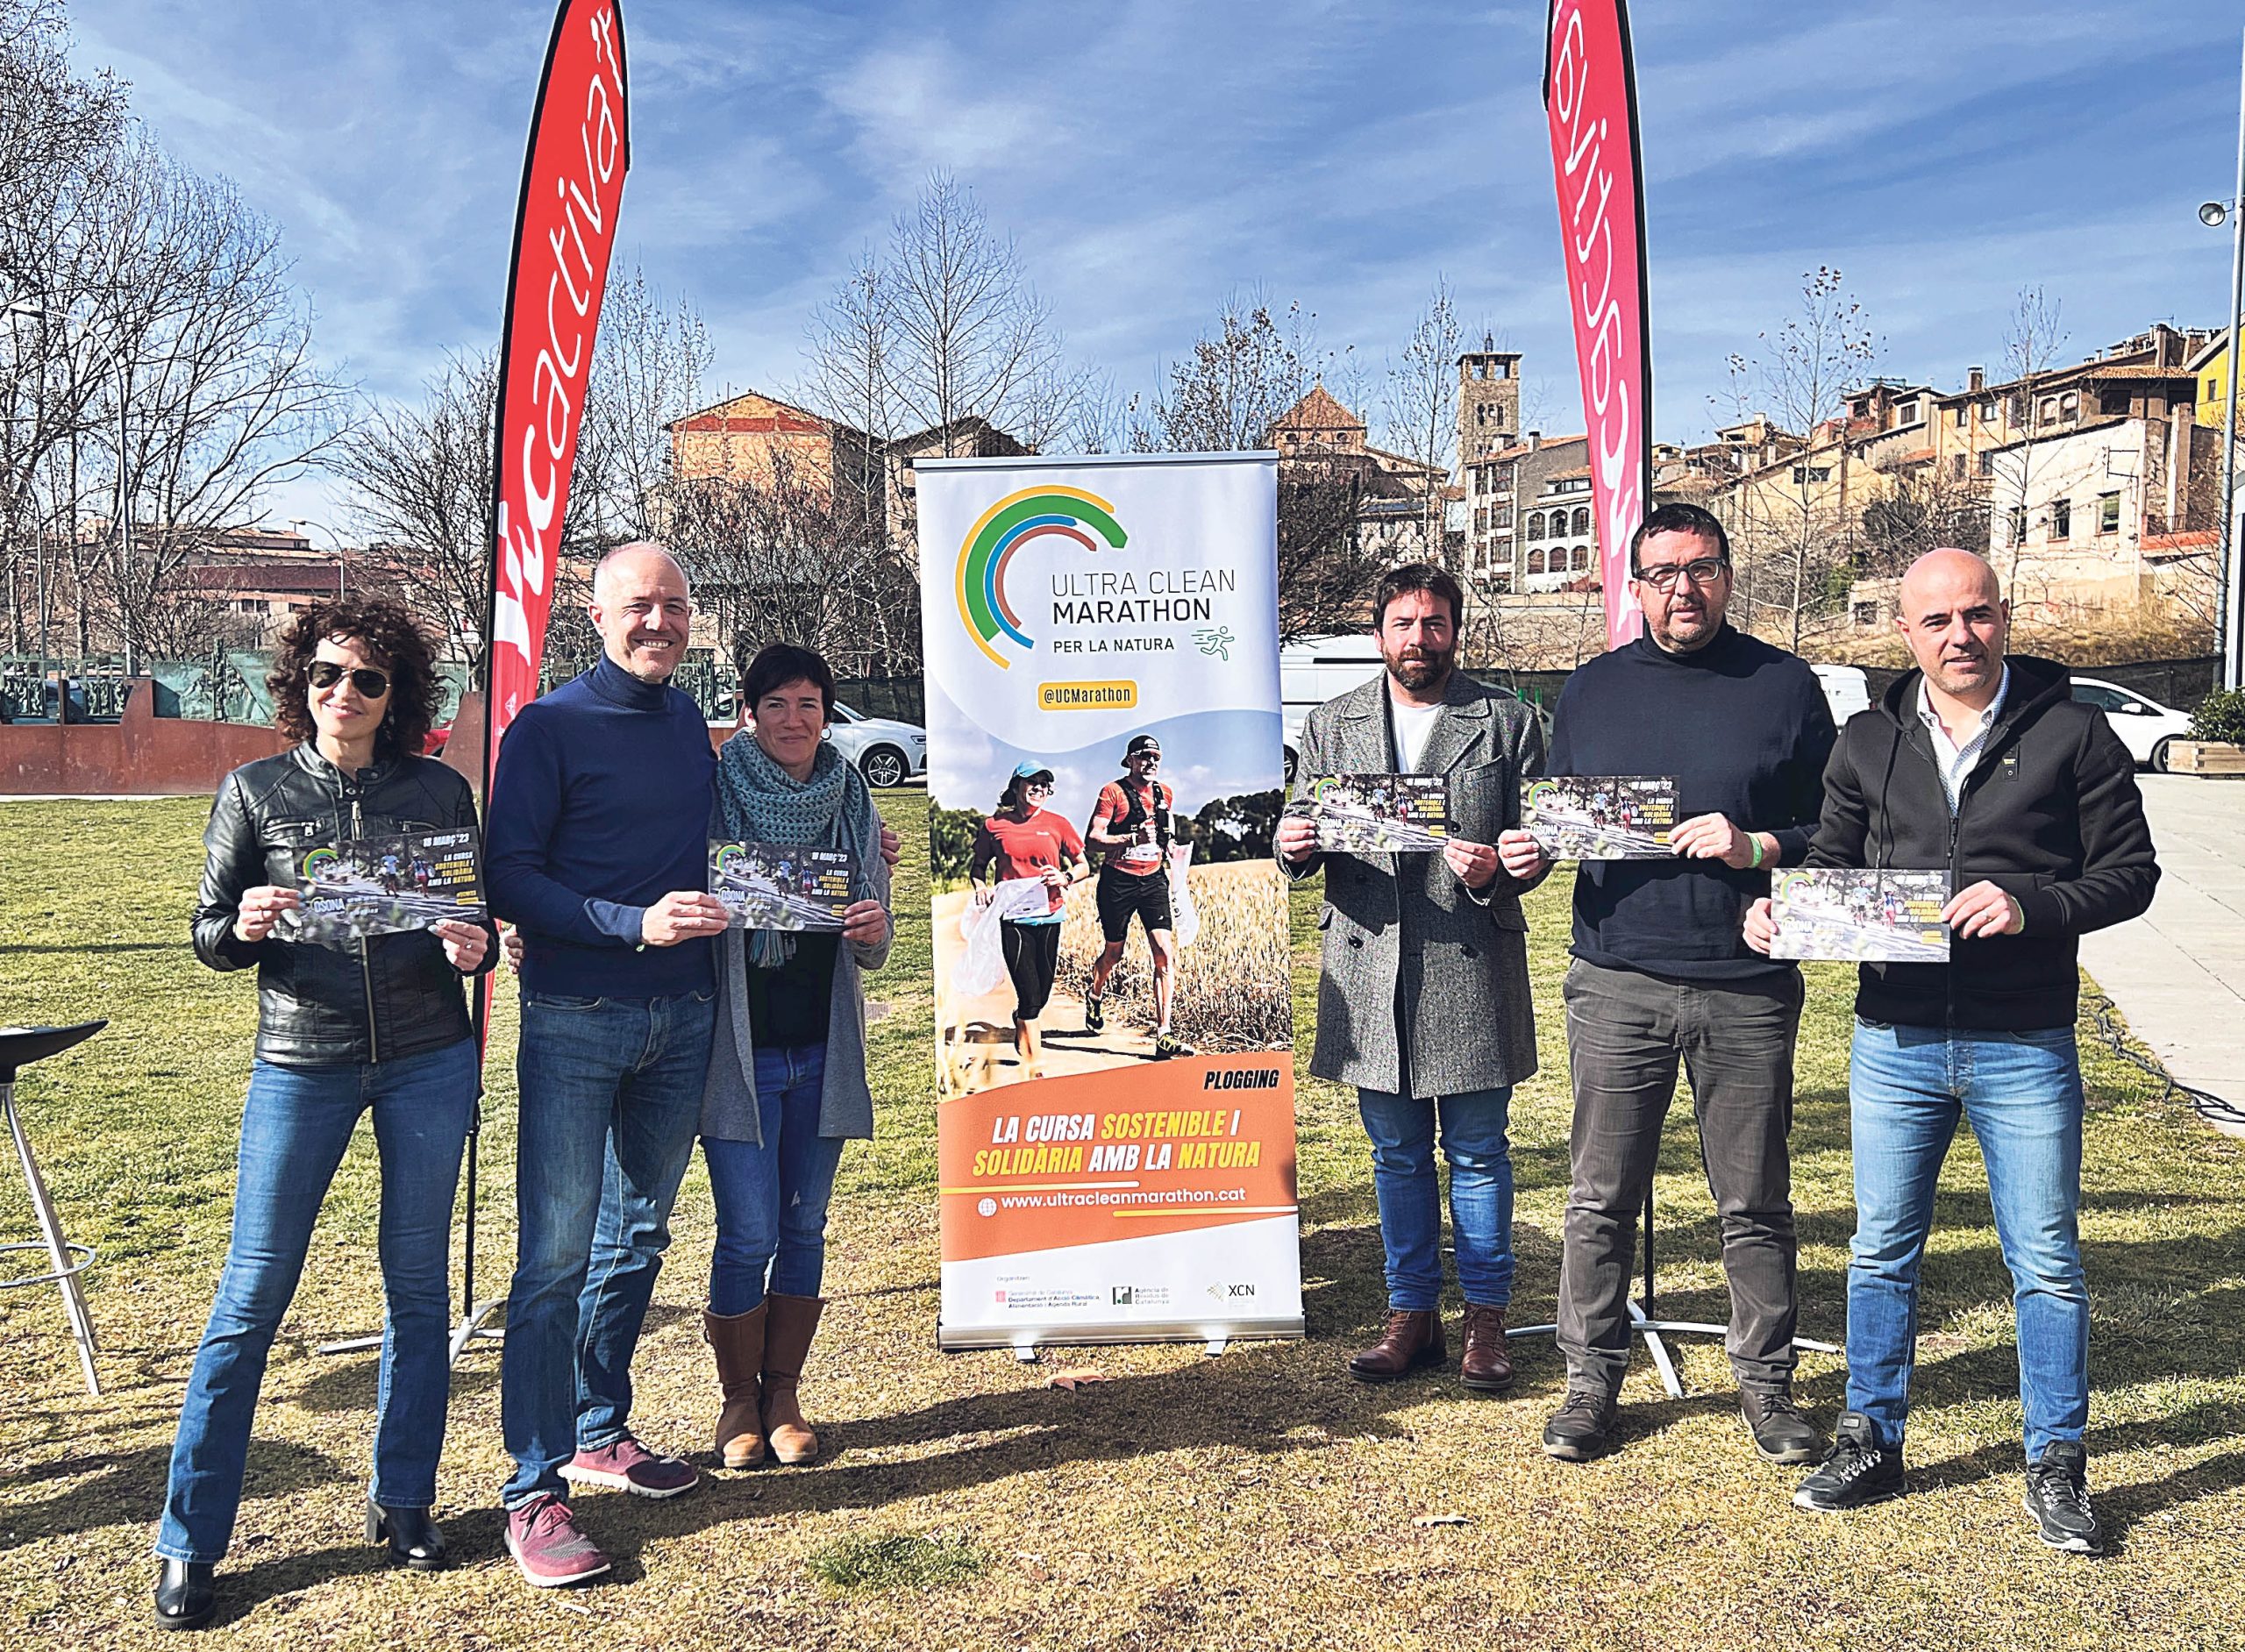 Torna l’Ultra Clean Marathon, recollint residus en un circuit circular per Osona el 18 de març